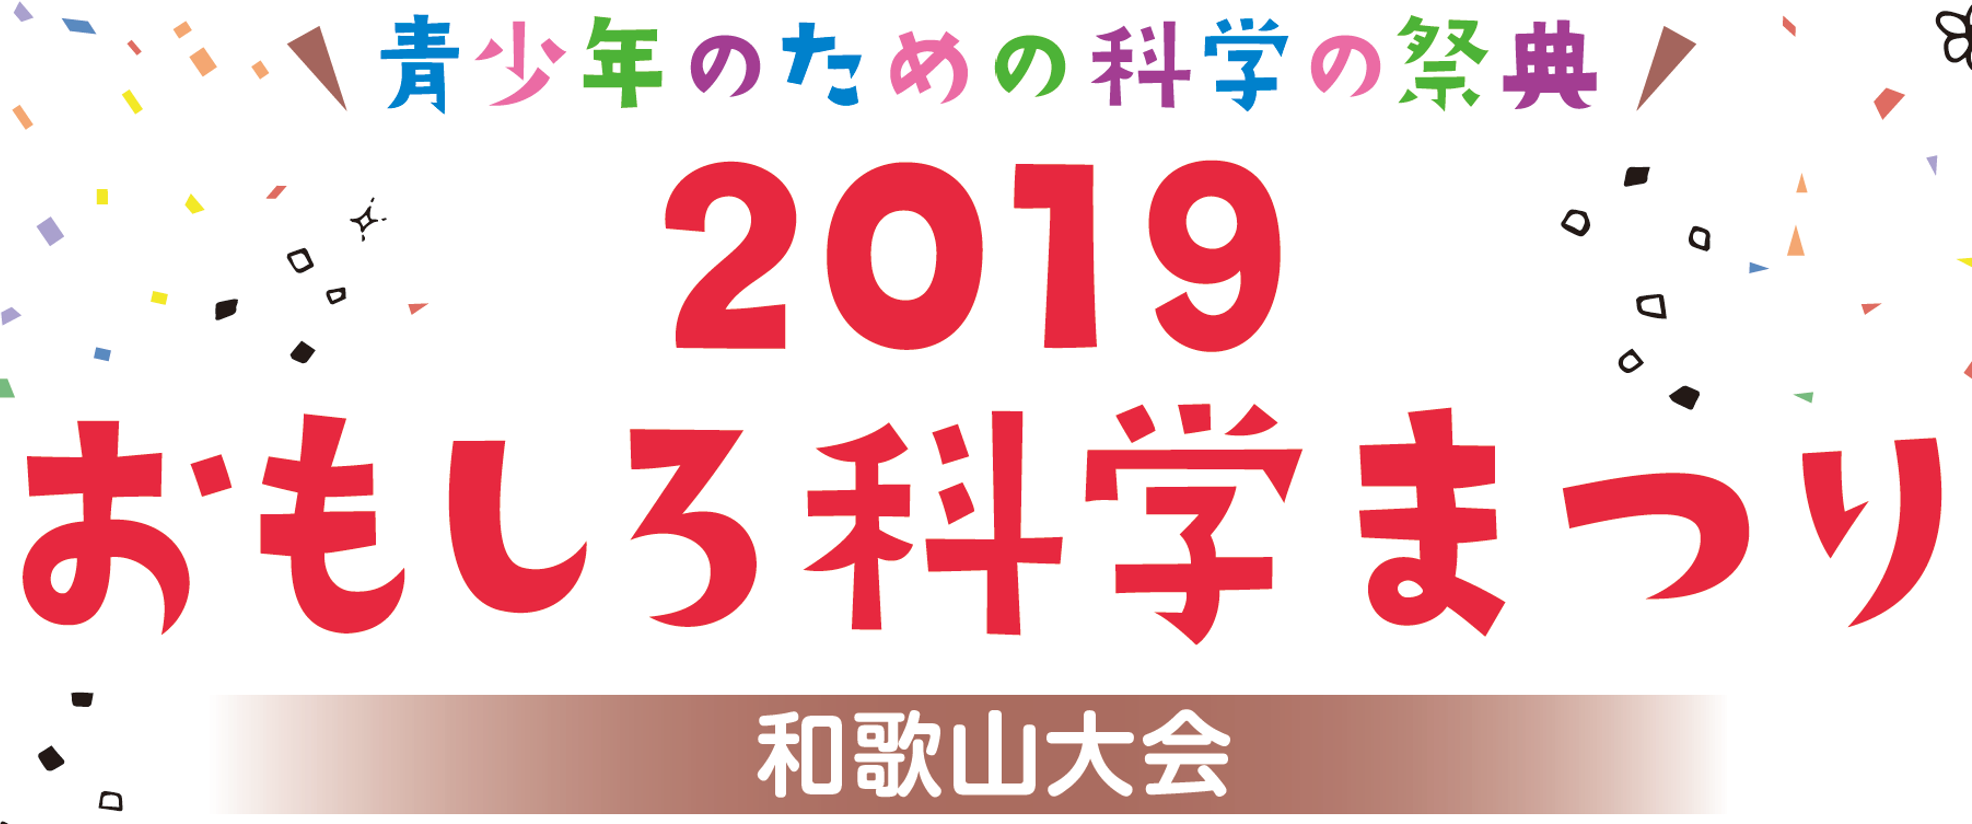 青少年のための科学の祭典 ー 2019 おもしろ科学まつり ー 和歌山大会